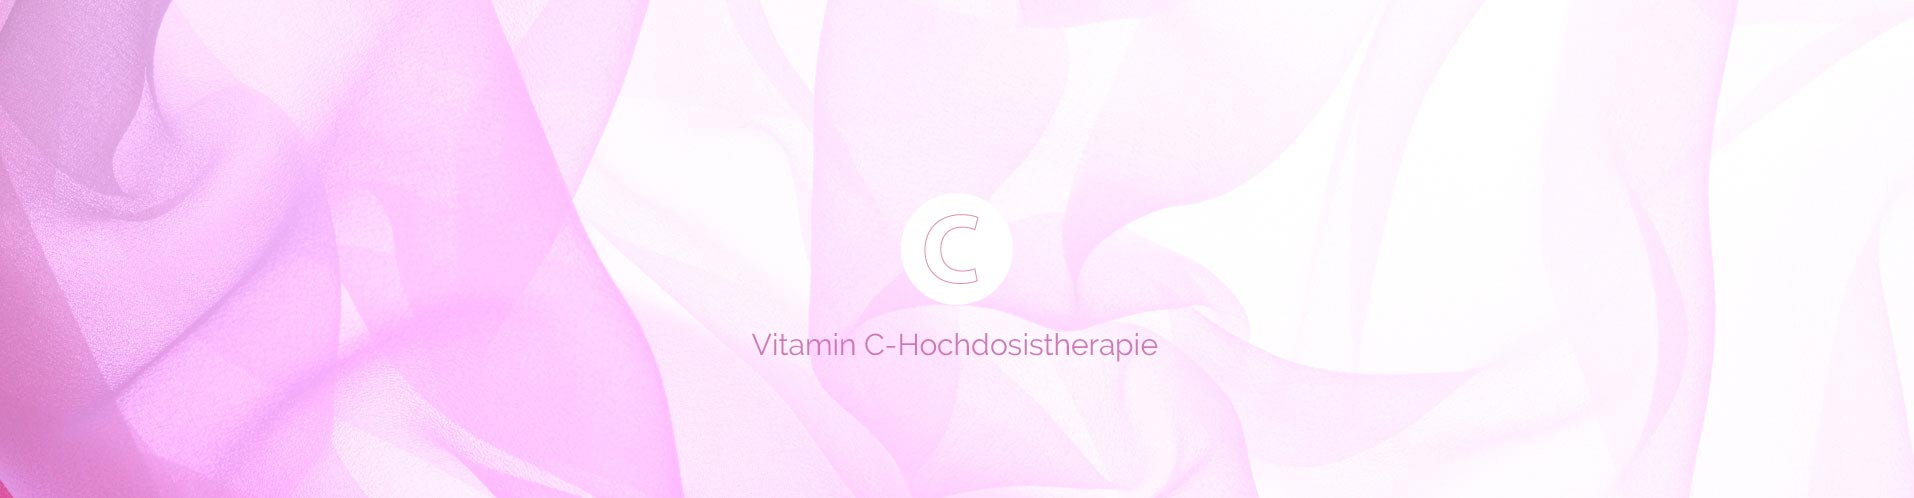 Vitamin C - Hochdosistherapie – vorbeugend, lindernd, heilend – ein Tausendsassa unter den Vitaminen